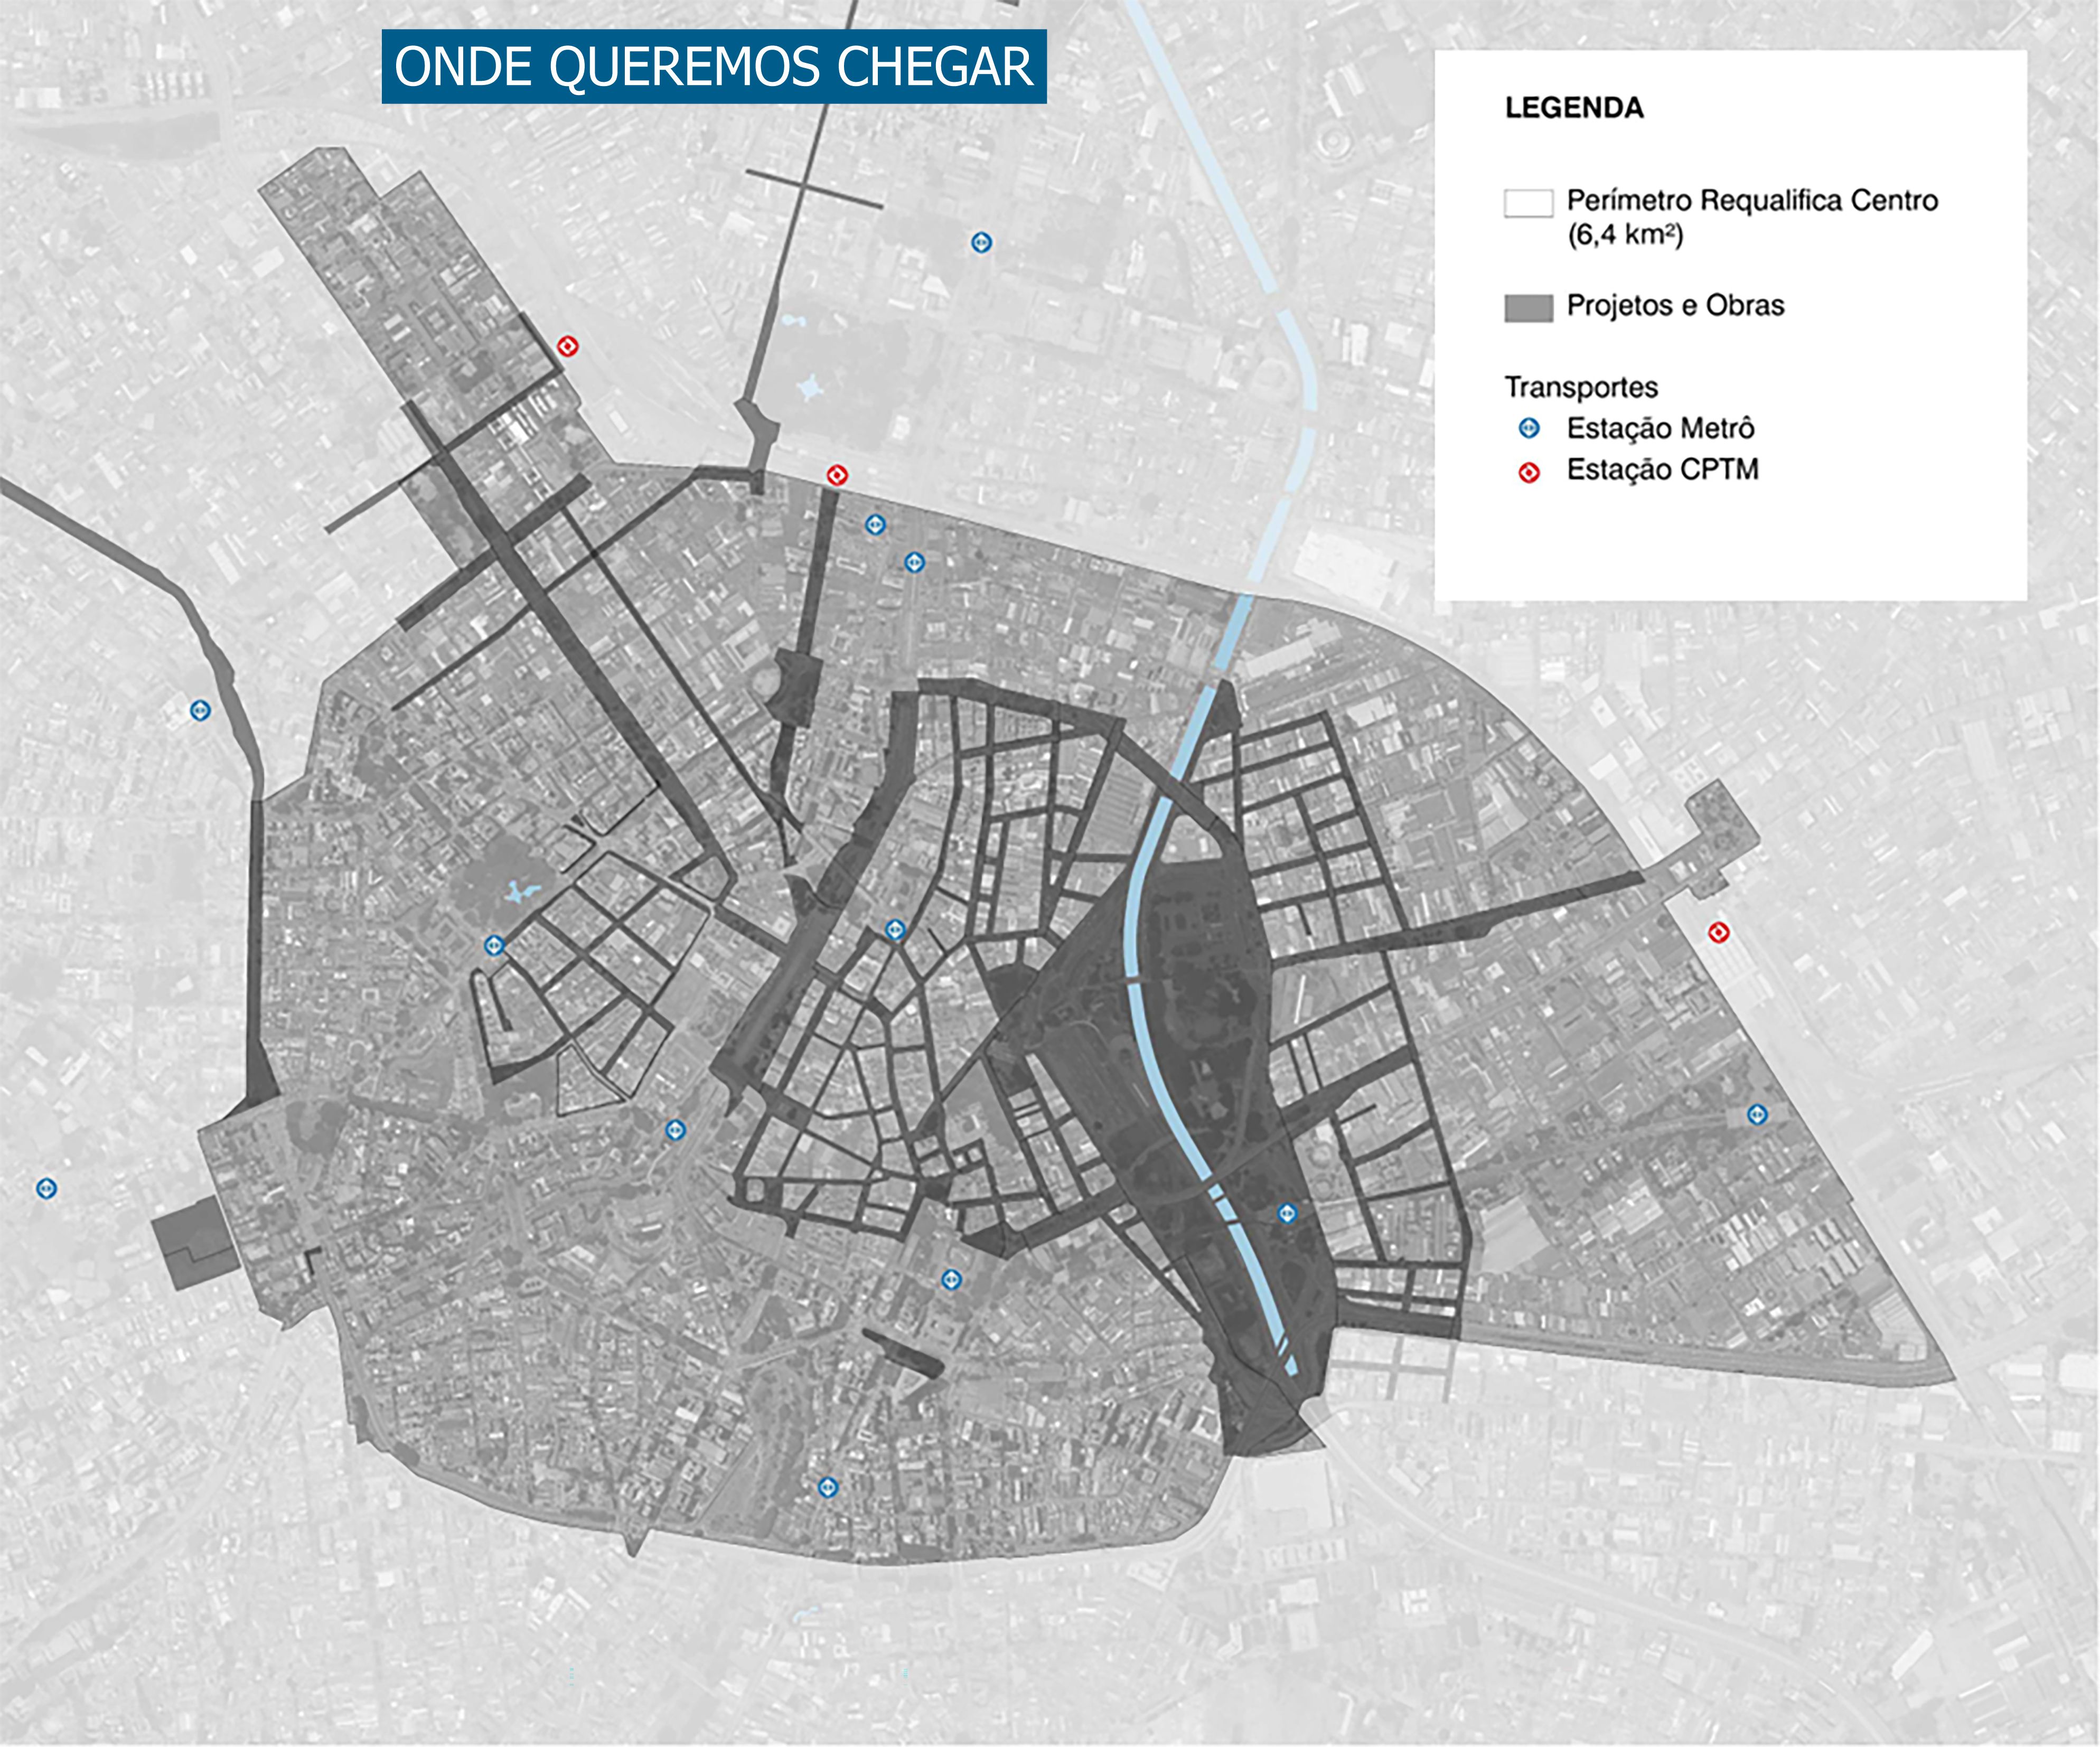 vista aérea de mapa da cidade de são paulo representando o objetivo do projeto "Todos pelo centro"